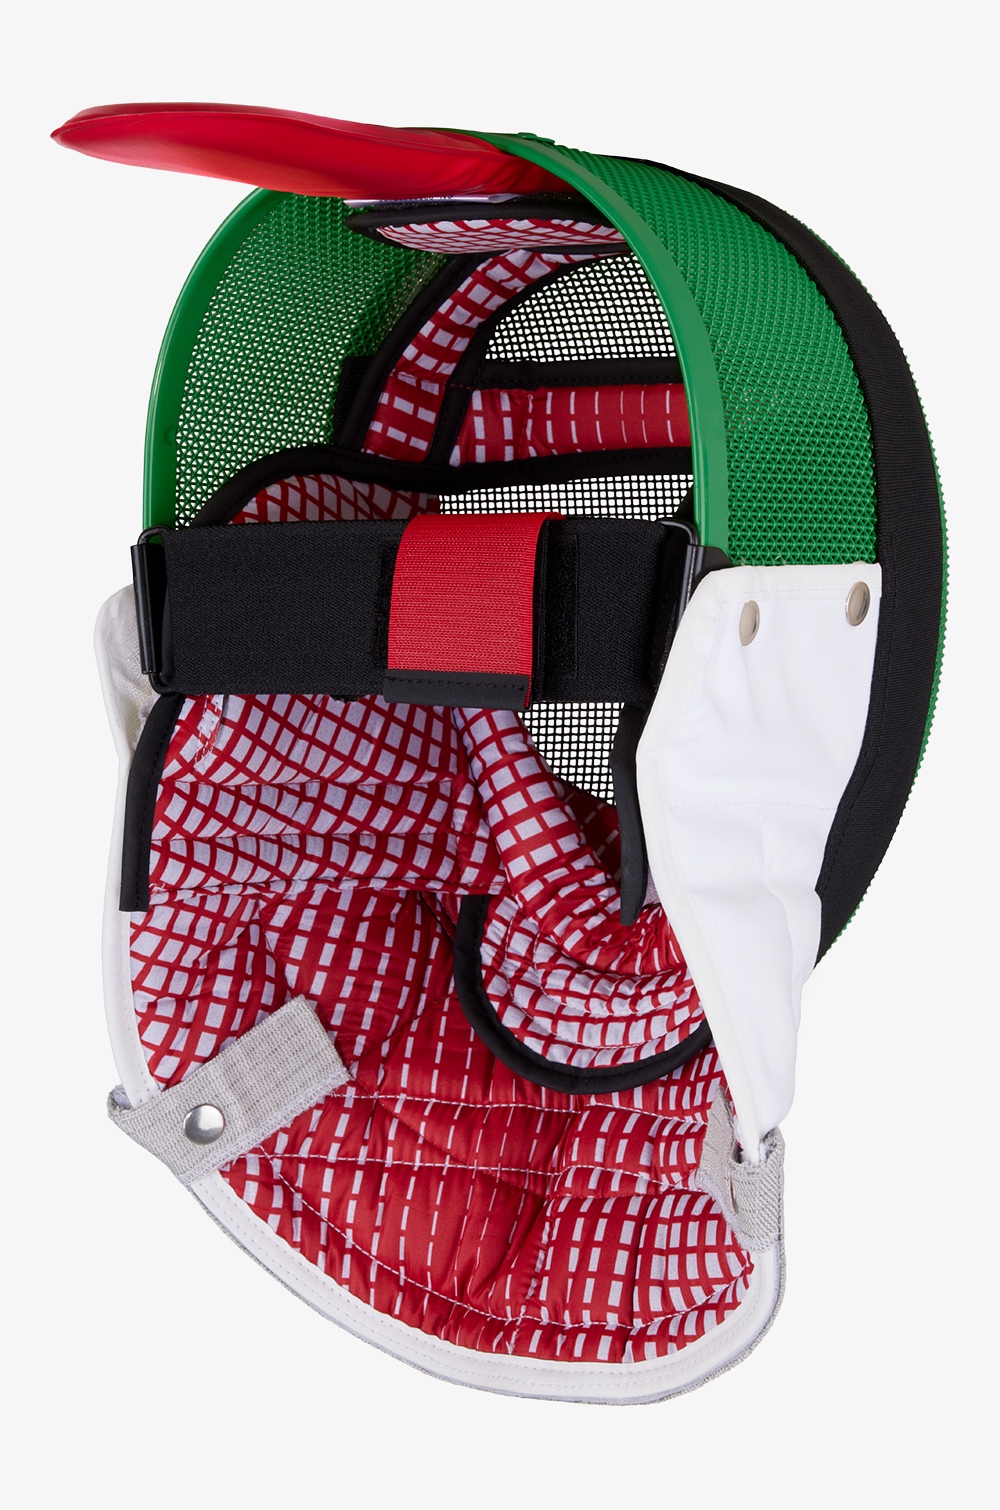 Colorierte VarioComfort FIE-Maske für Florett/Degen